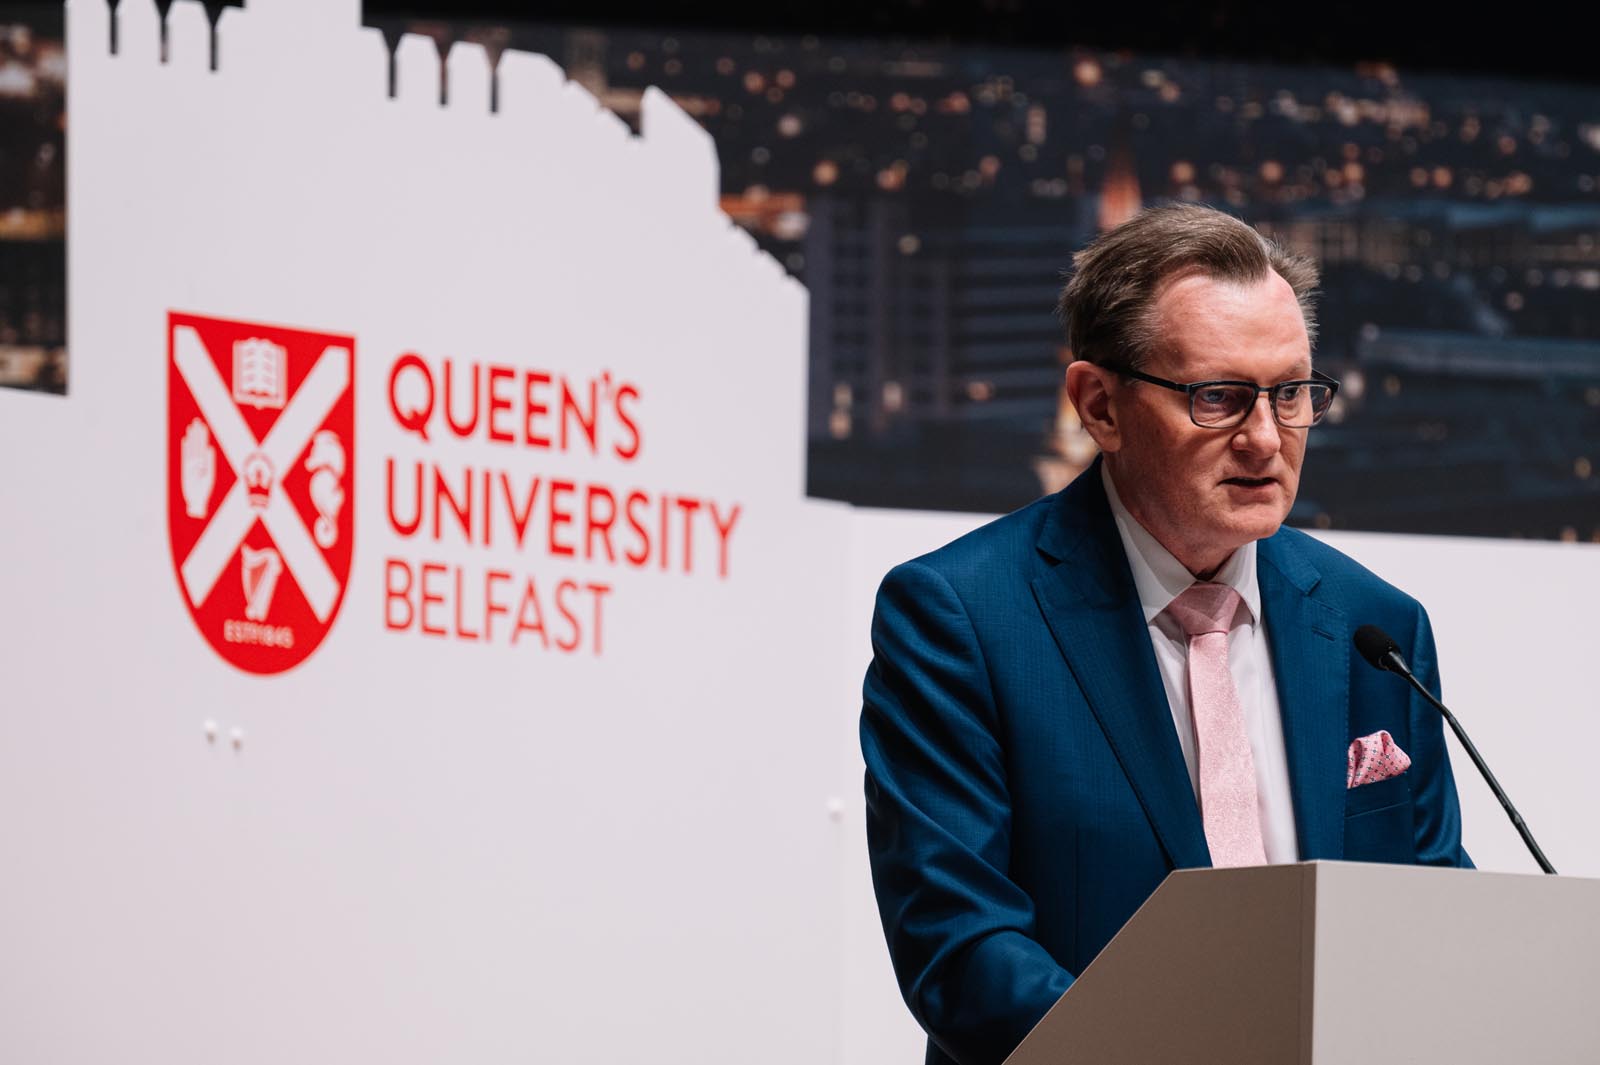 Professor Ian Greer, President and Vice-Chancellor of Queen’s University Belfast